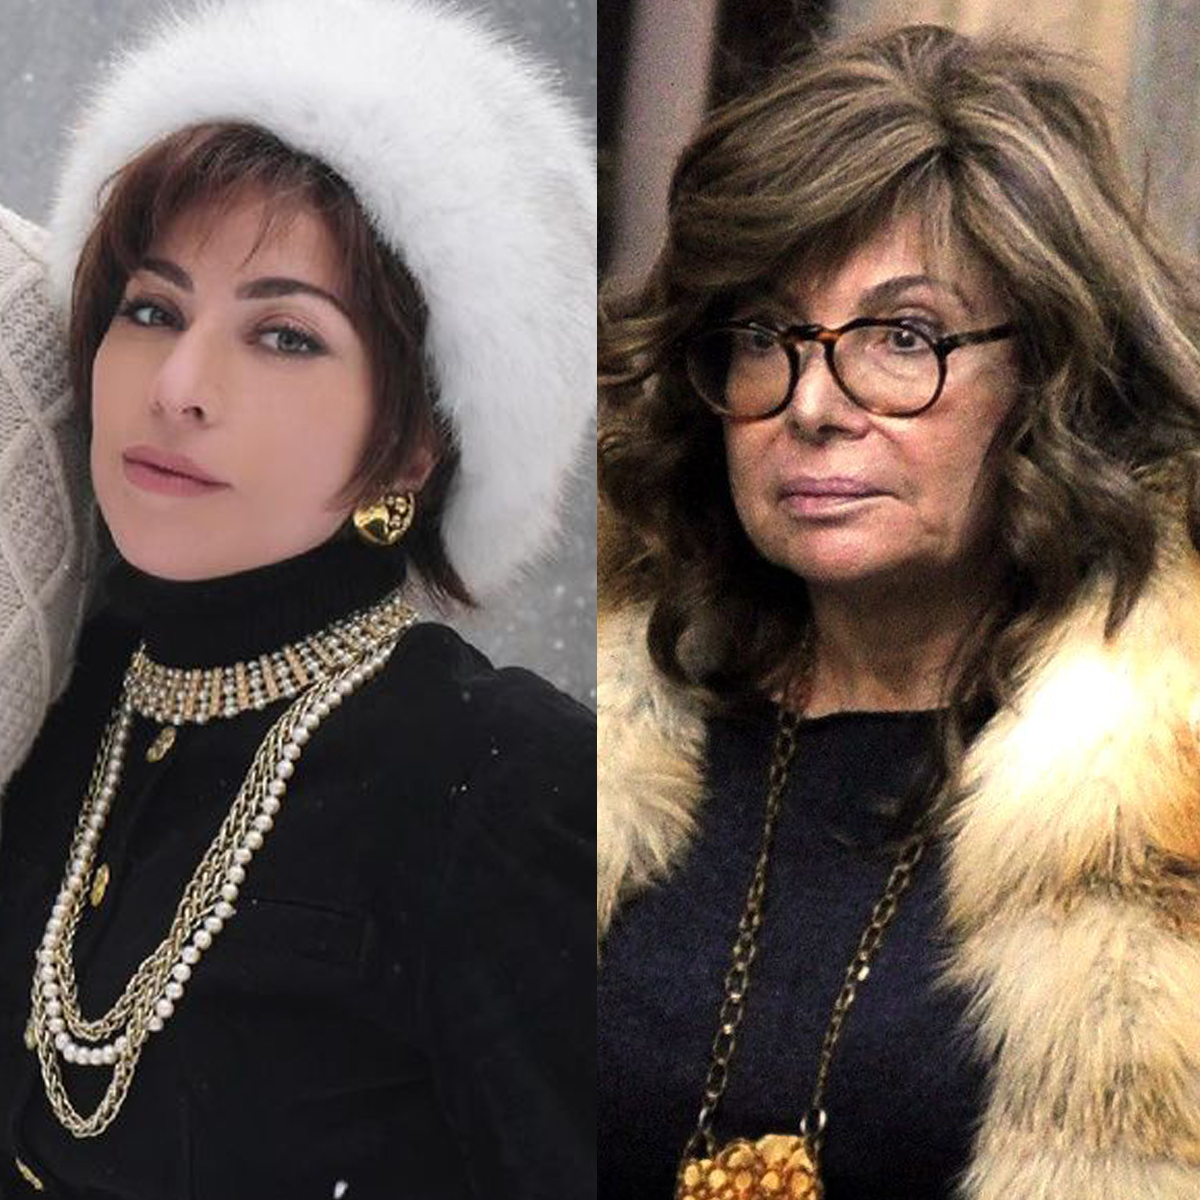 Gucci S Ex Patrizia Reggiani Slams Lady Gaga House Of Gucci E Online